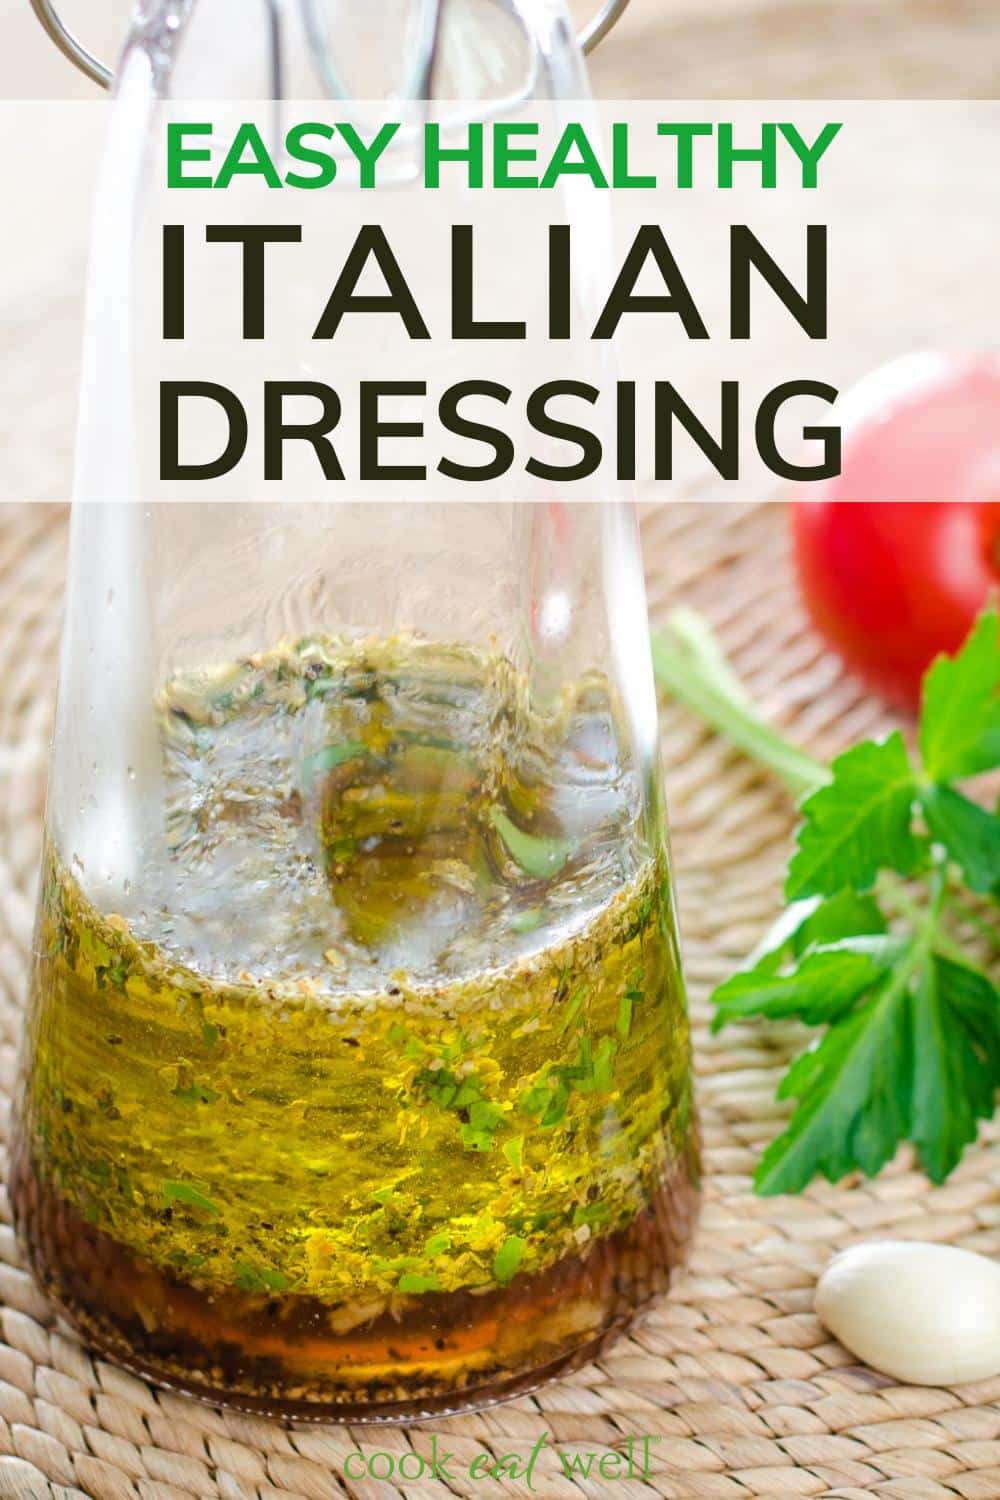 Easy healthy Italian dressing